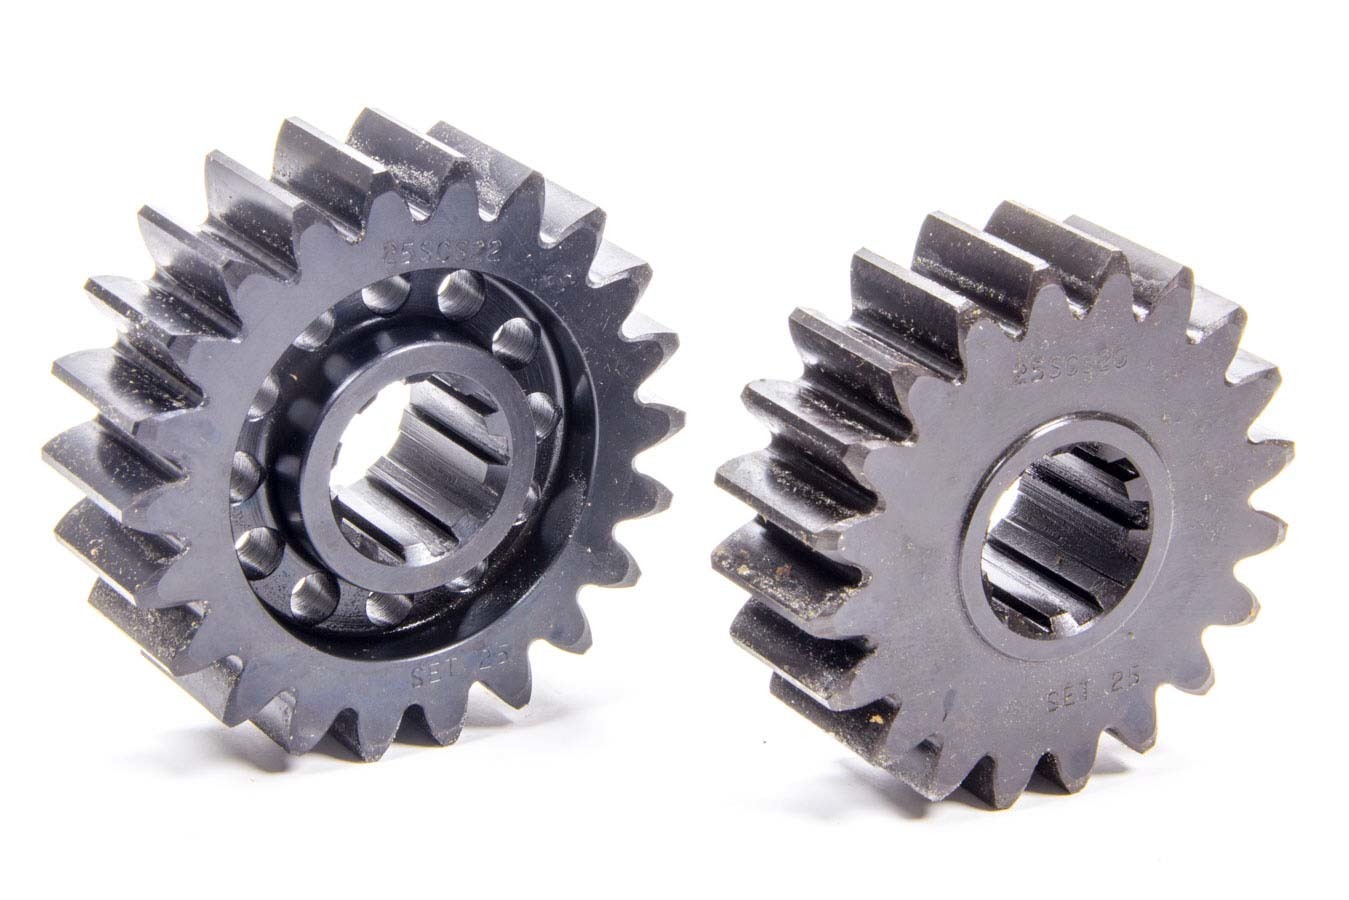 SCS Gears 25 Quick Change Gear Set, Professional, Set 25, 10 Spline, 4.11 Ratio 4.52 / 3.74, 4.86 Ratio 5.35 / 4.42, Steel, Each